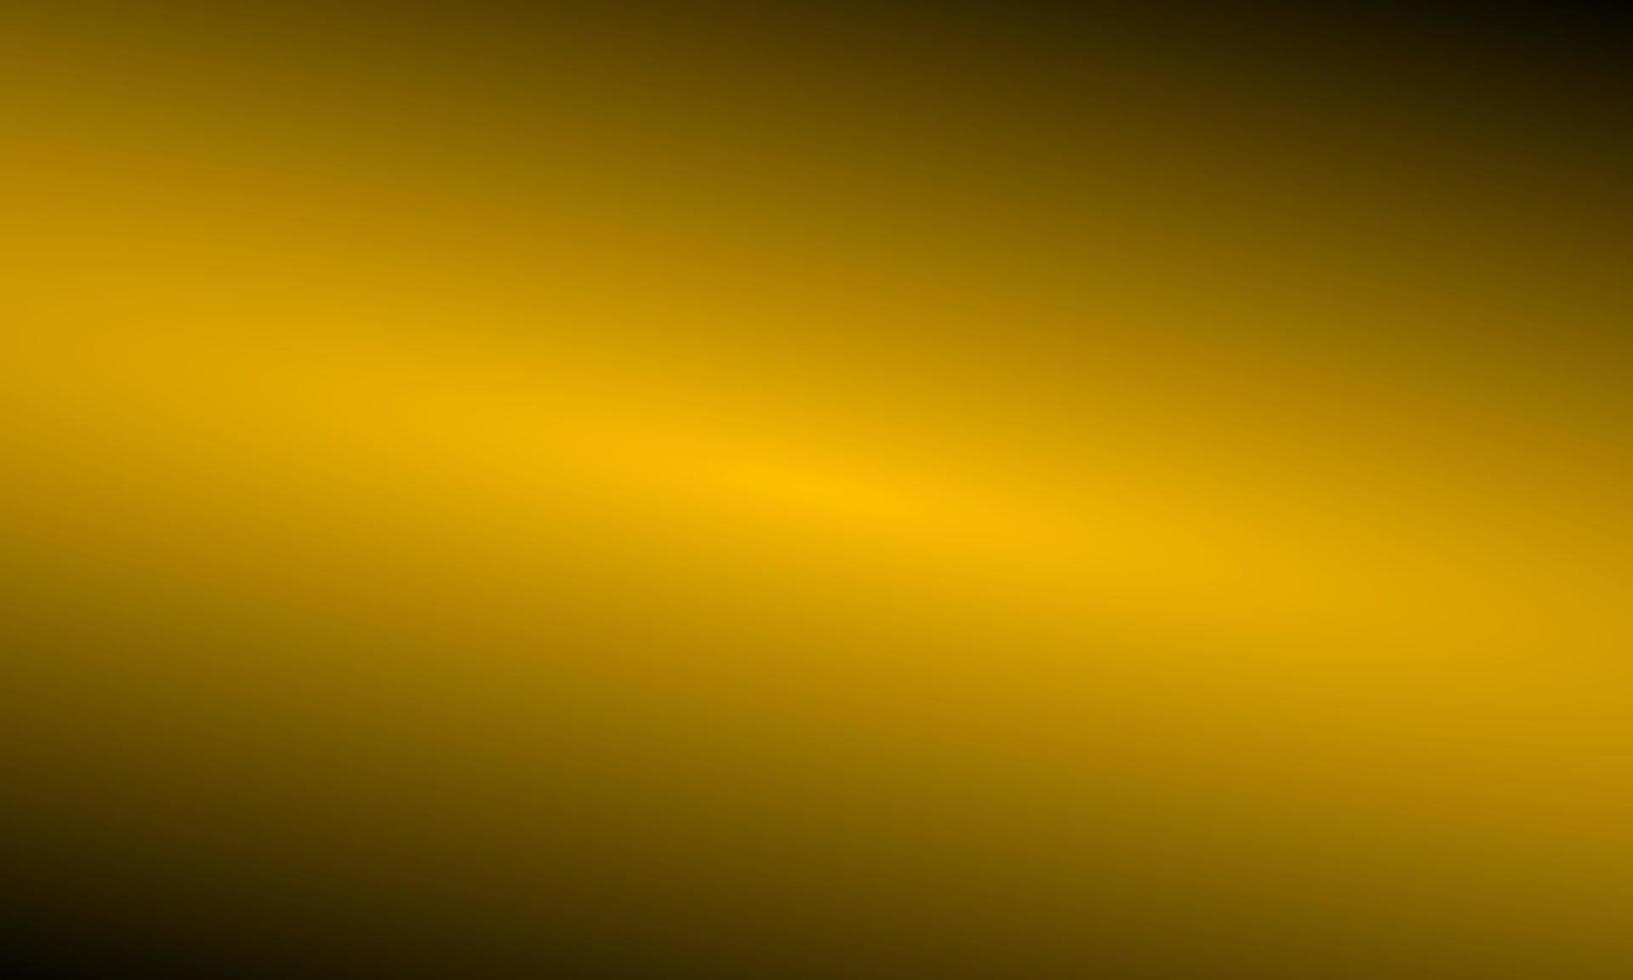 abstratos triângulos de polígono dourado forma de fundo com linha dourada e estilo de luxo de efeito de iluminação. ilustração vetorial design conceito de tecnologia digital. vetor